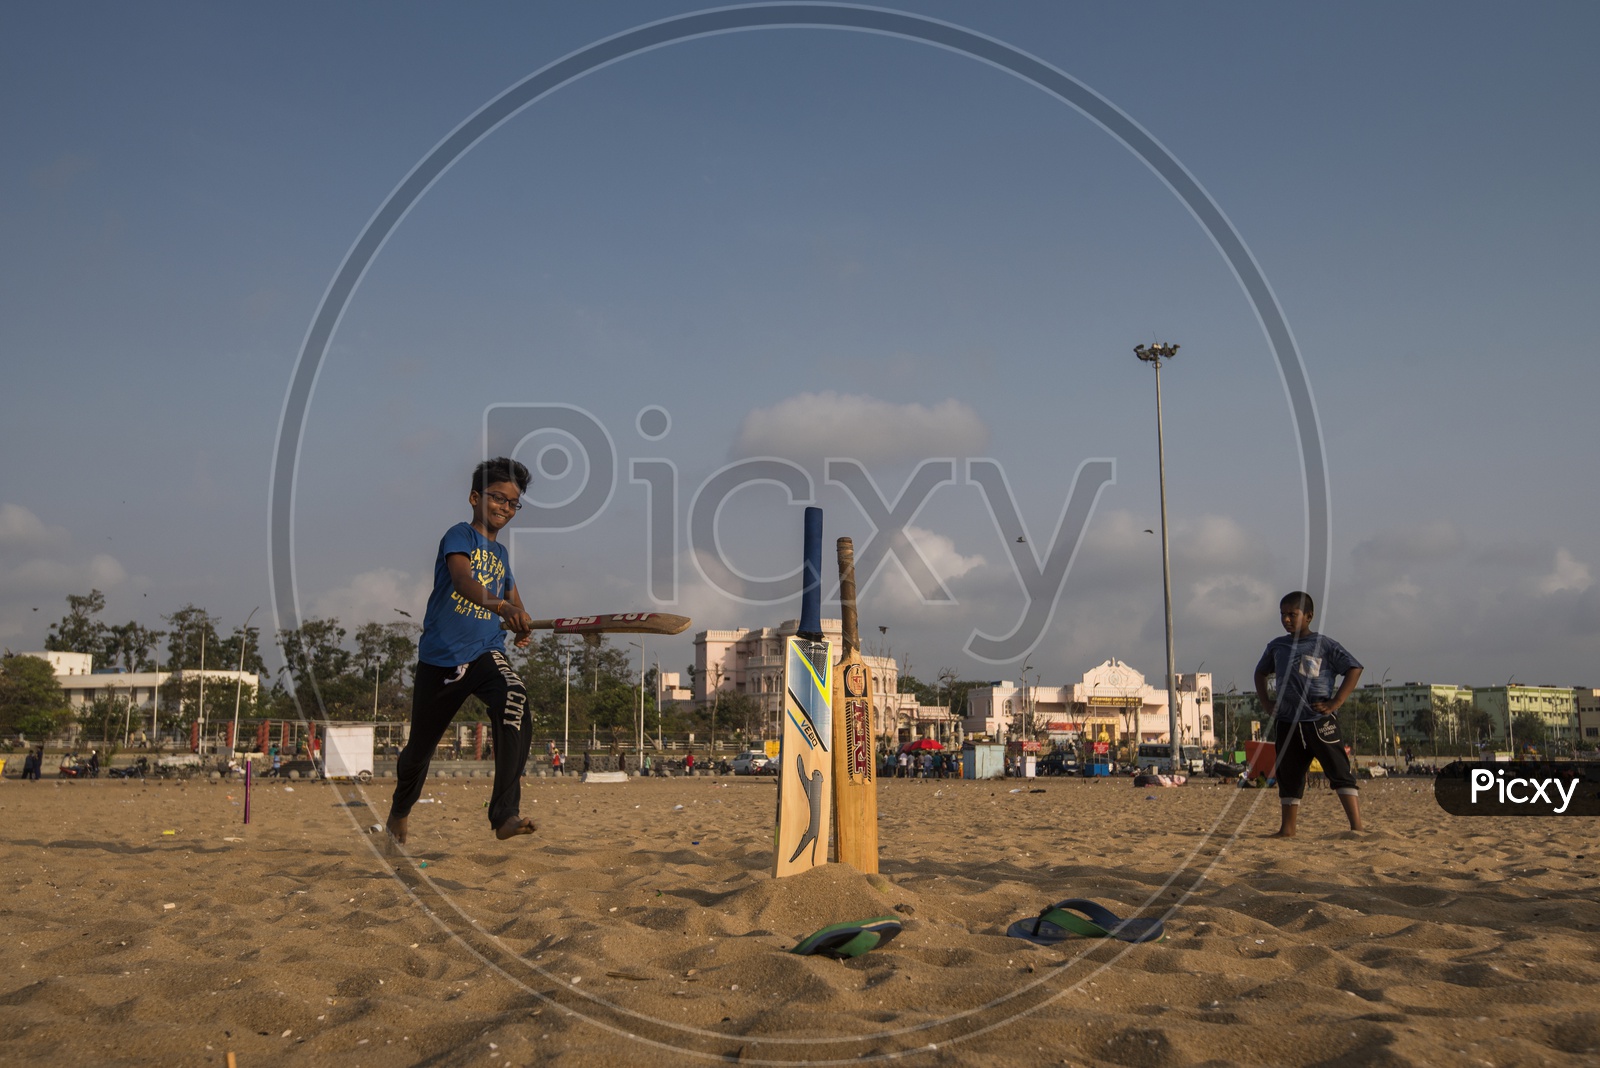 Children Playing Cricket in beach